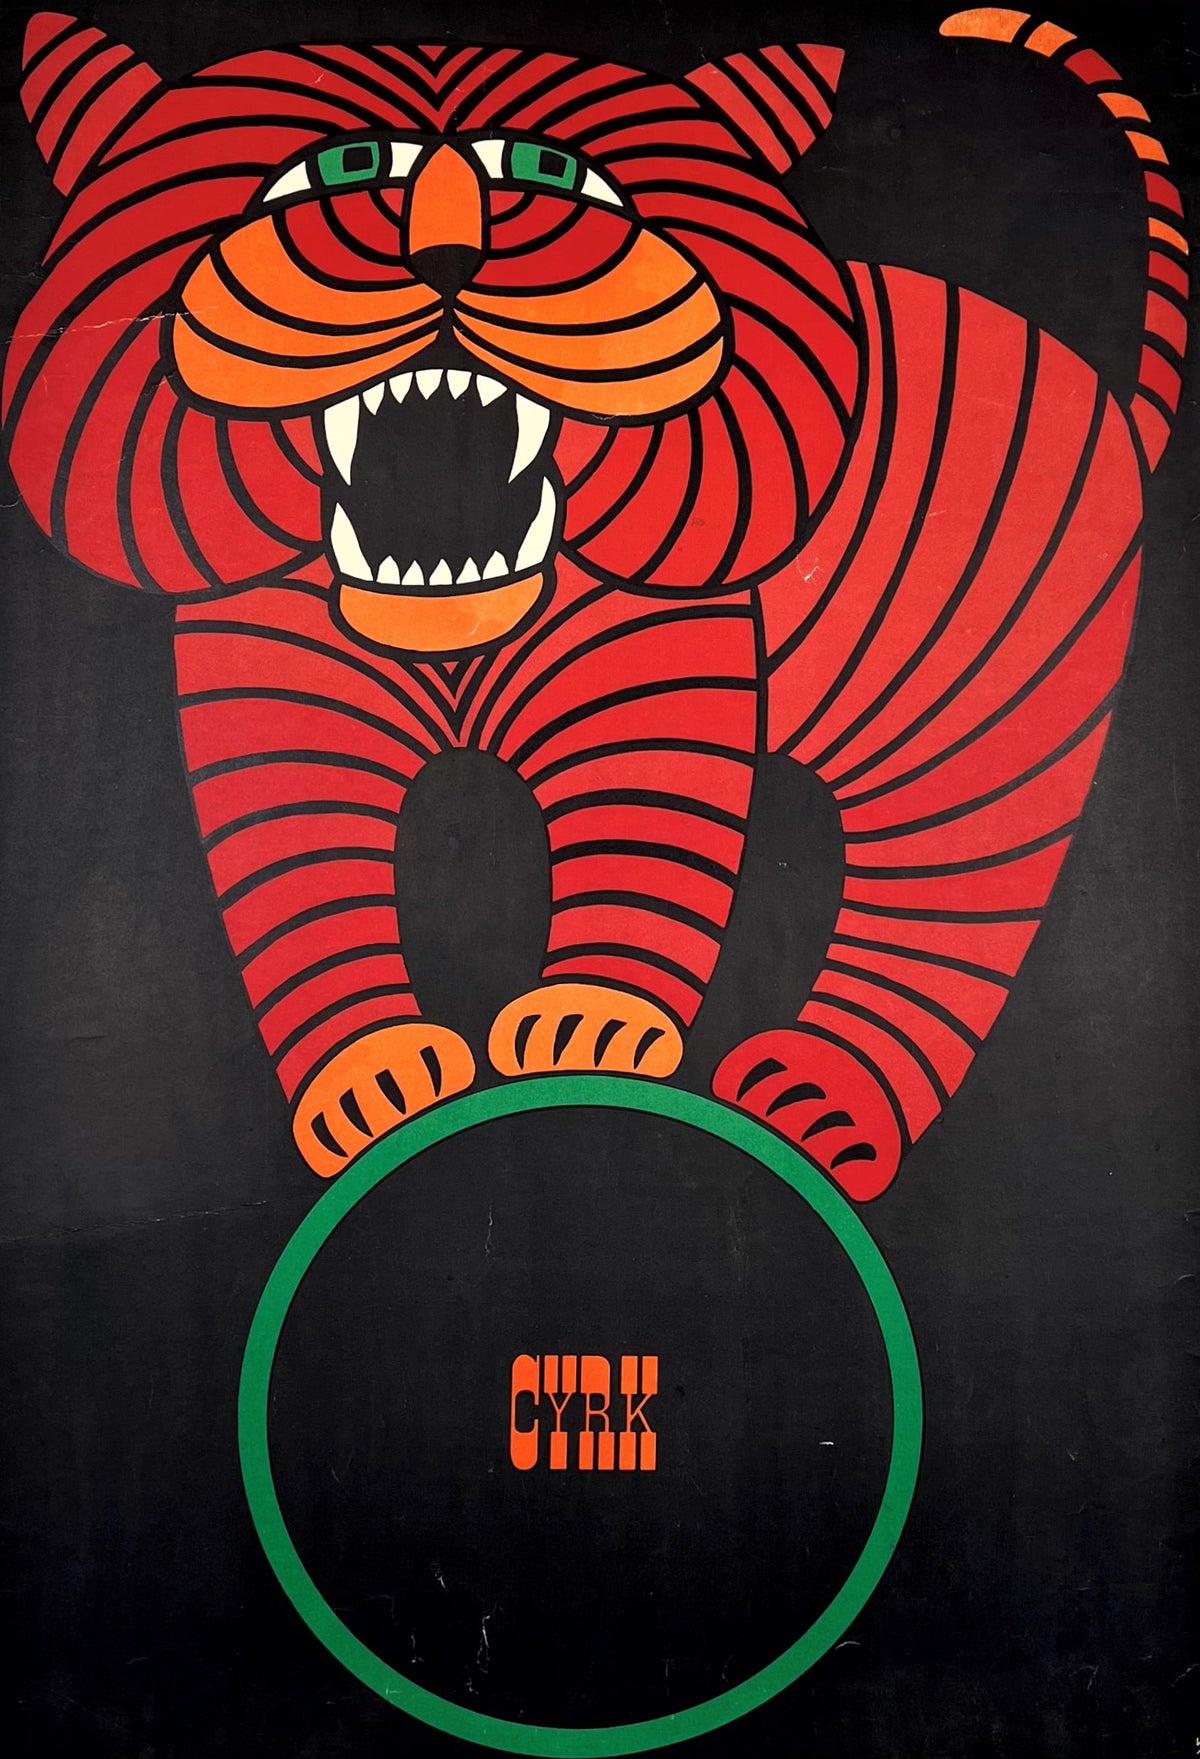 Cyrk Tiger by Hubert Hilscher - Authentic Vintage Poster